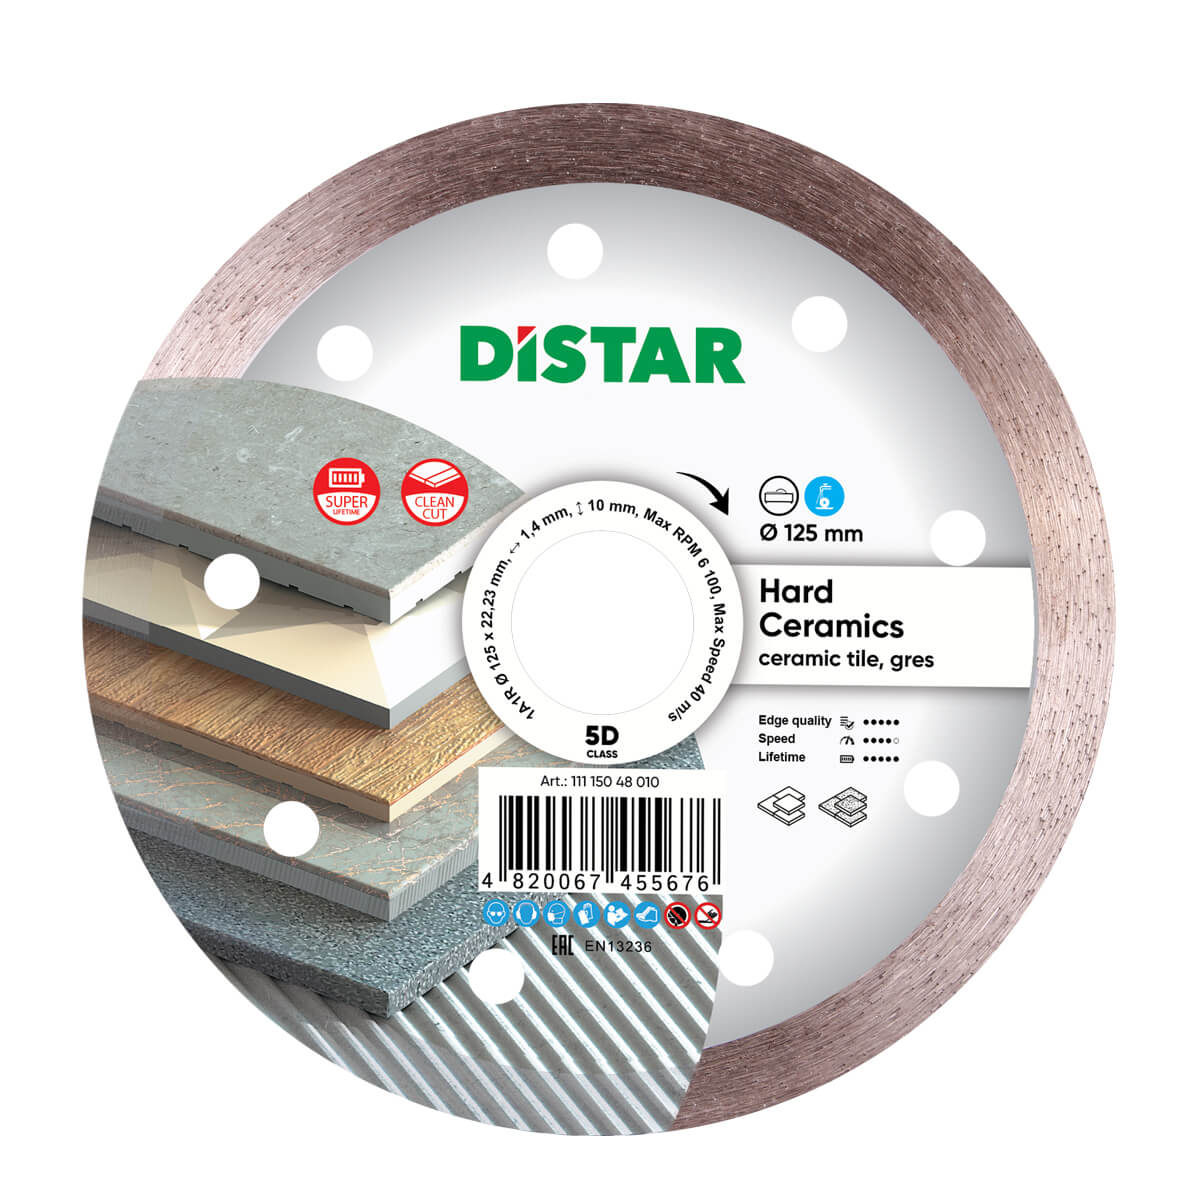 Диск алмазный отрезной по керамограниту и керамике для УШМ Distar 125 мм Hard ceramics 5D диск алмазный отрезной по керамике и керамограниту для ушм distar 1a1r 125 мм esthete 7d